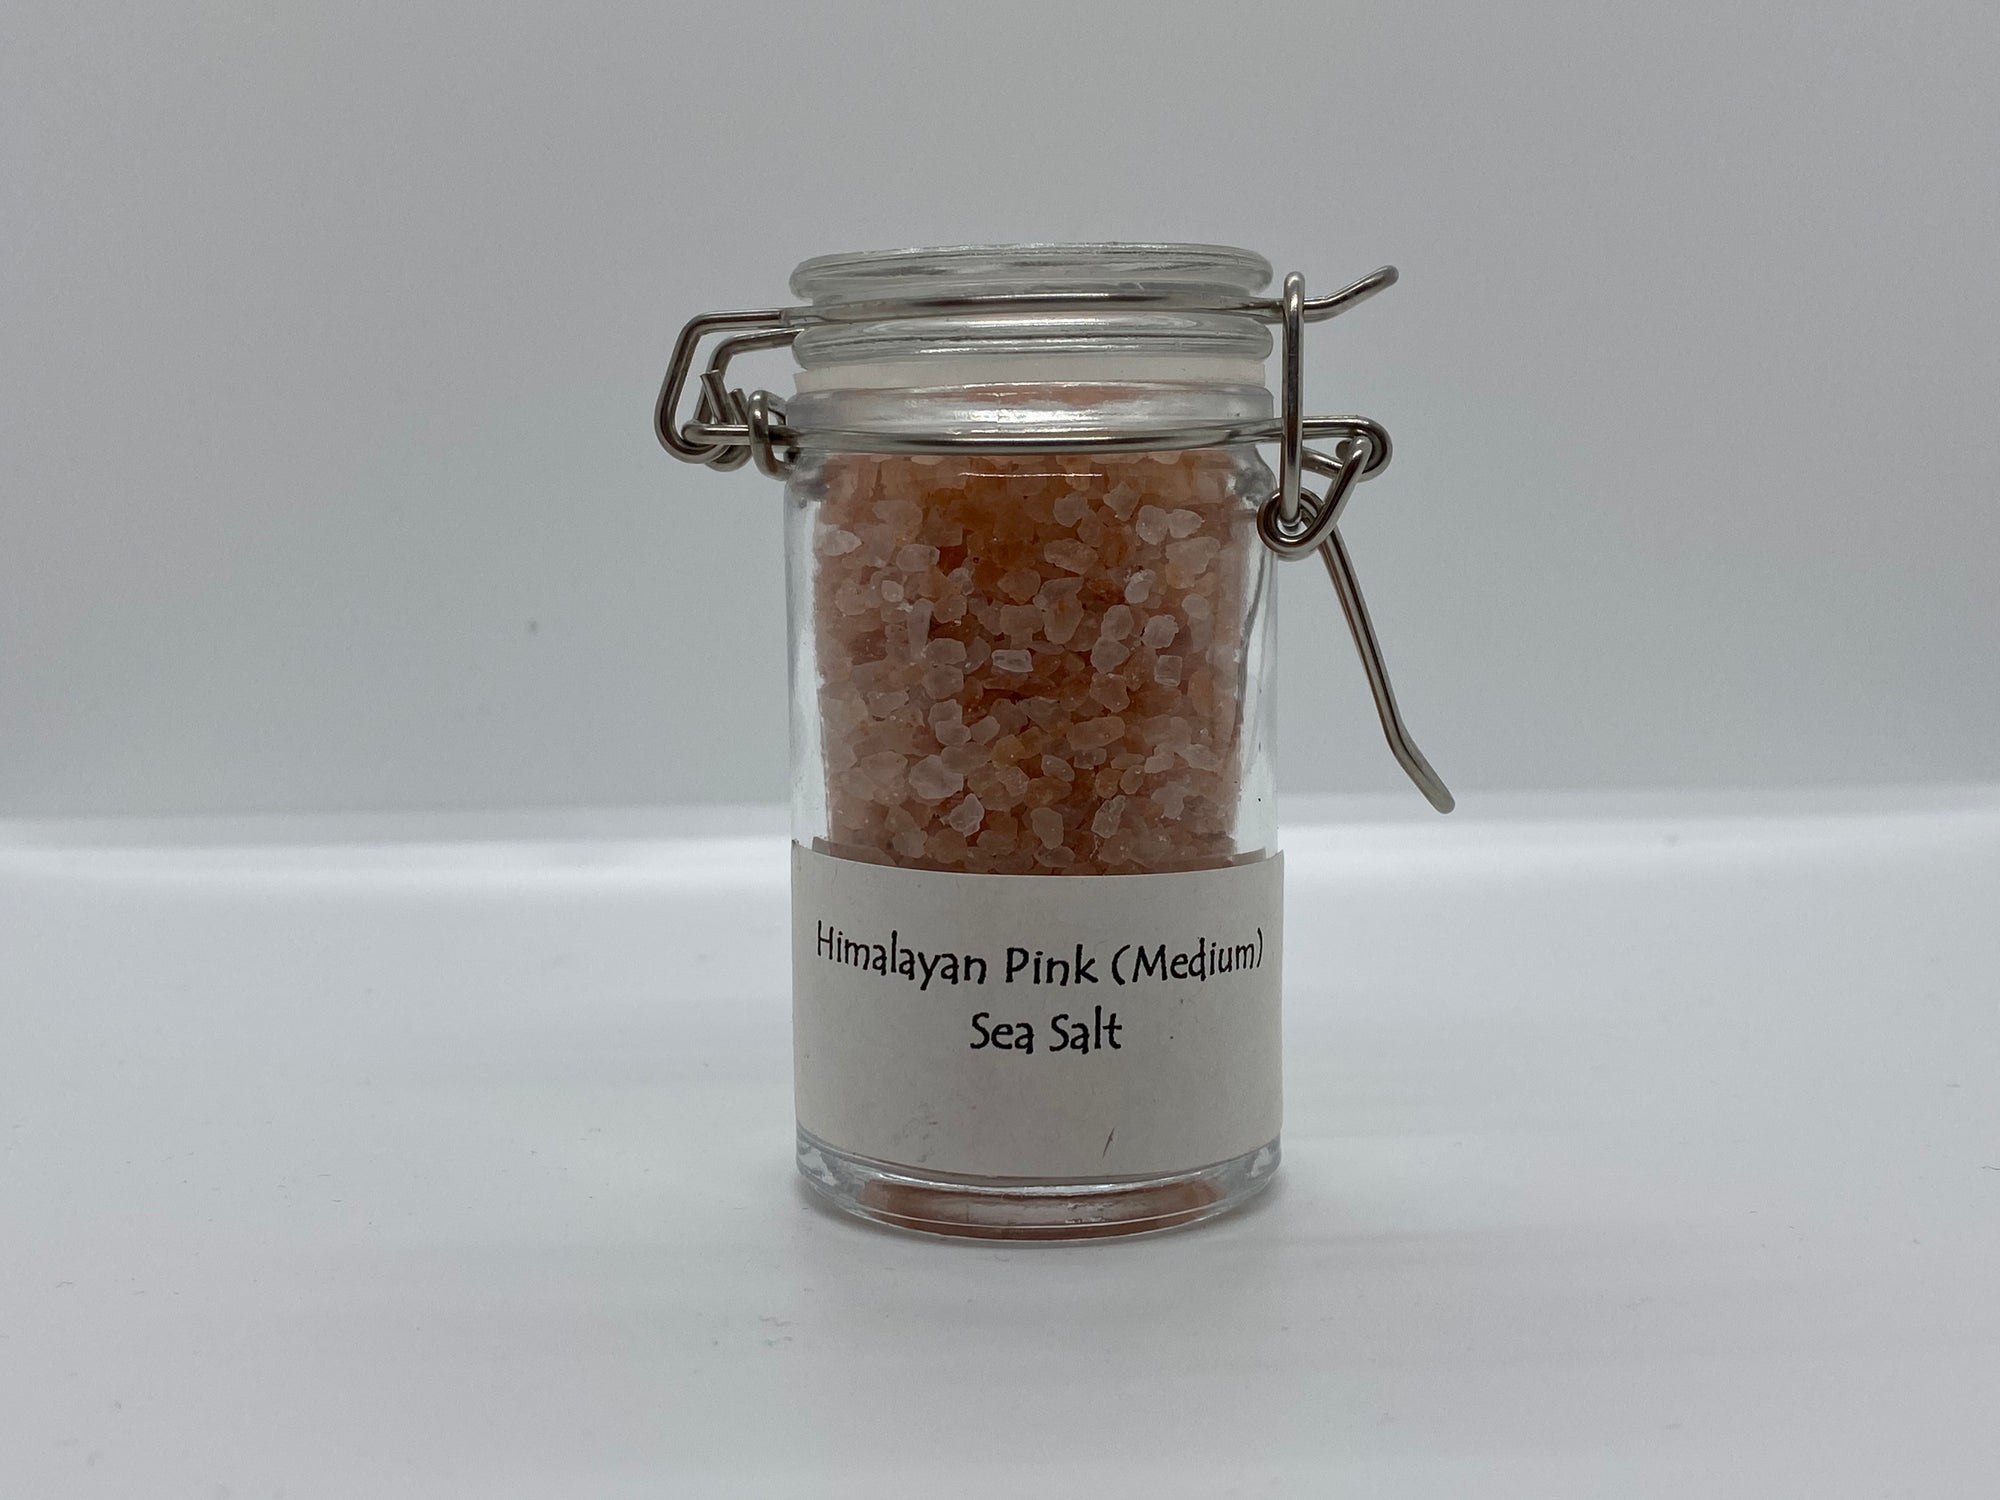 Himalayan Pink (Medium) Sea Salt